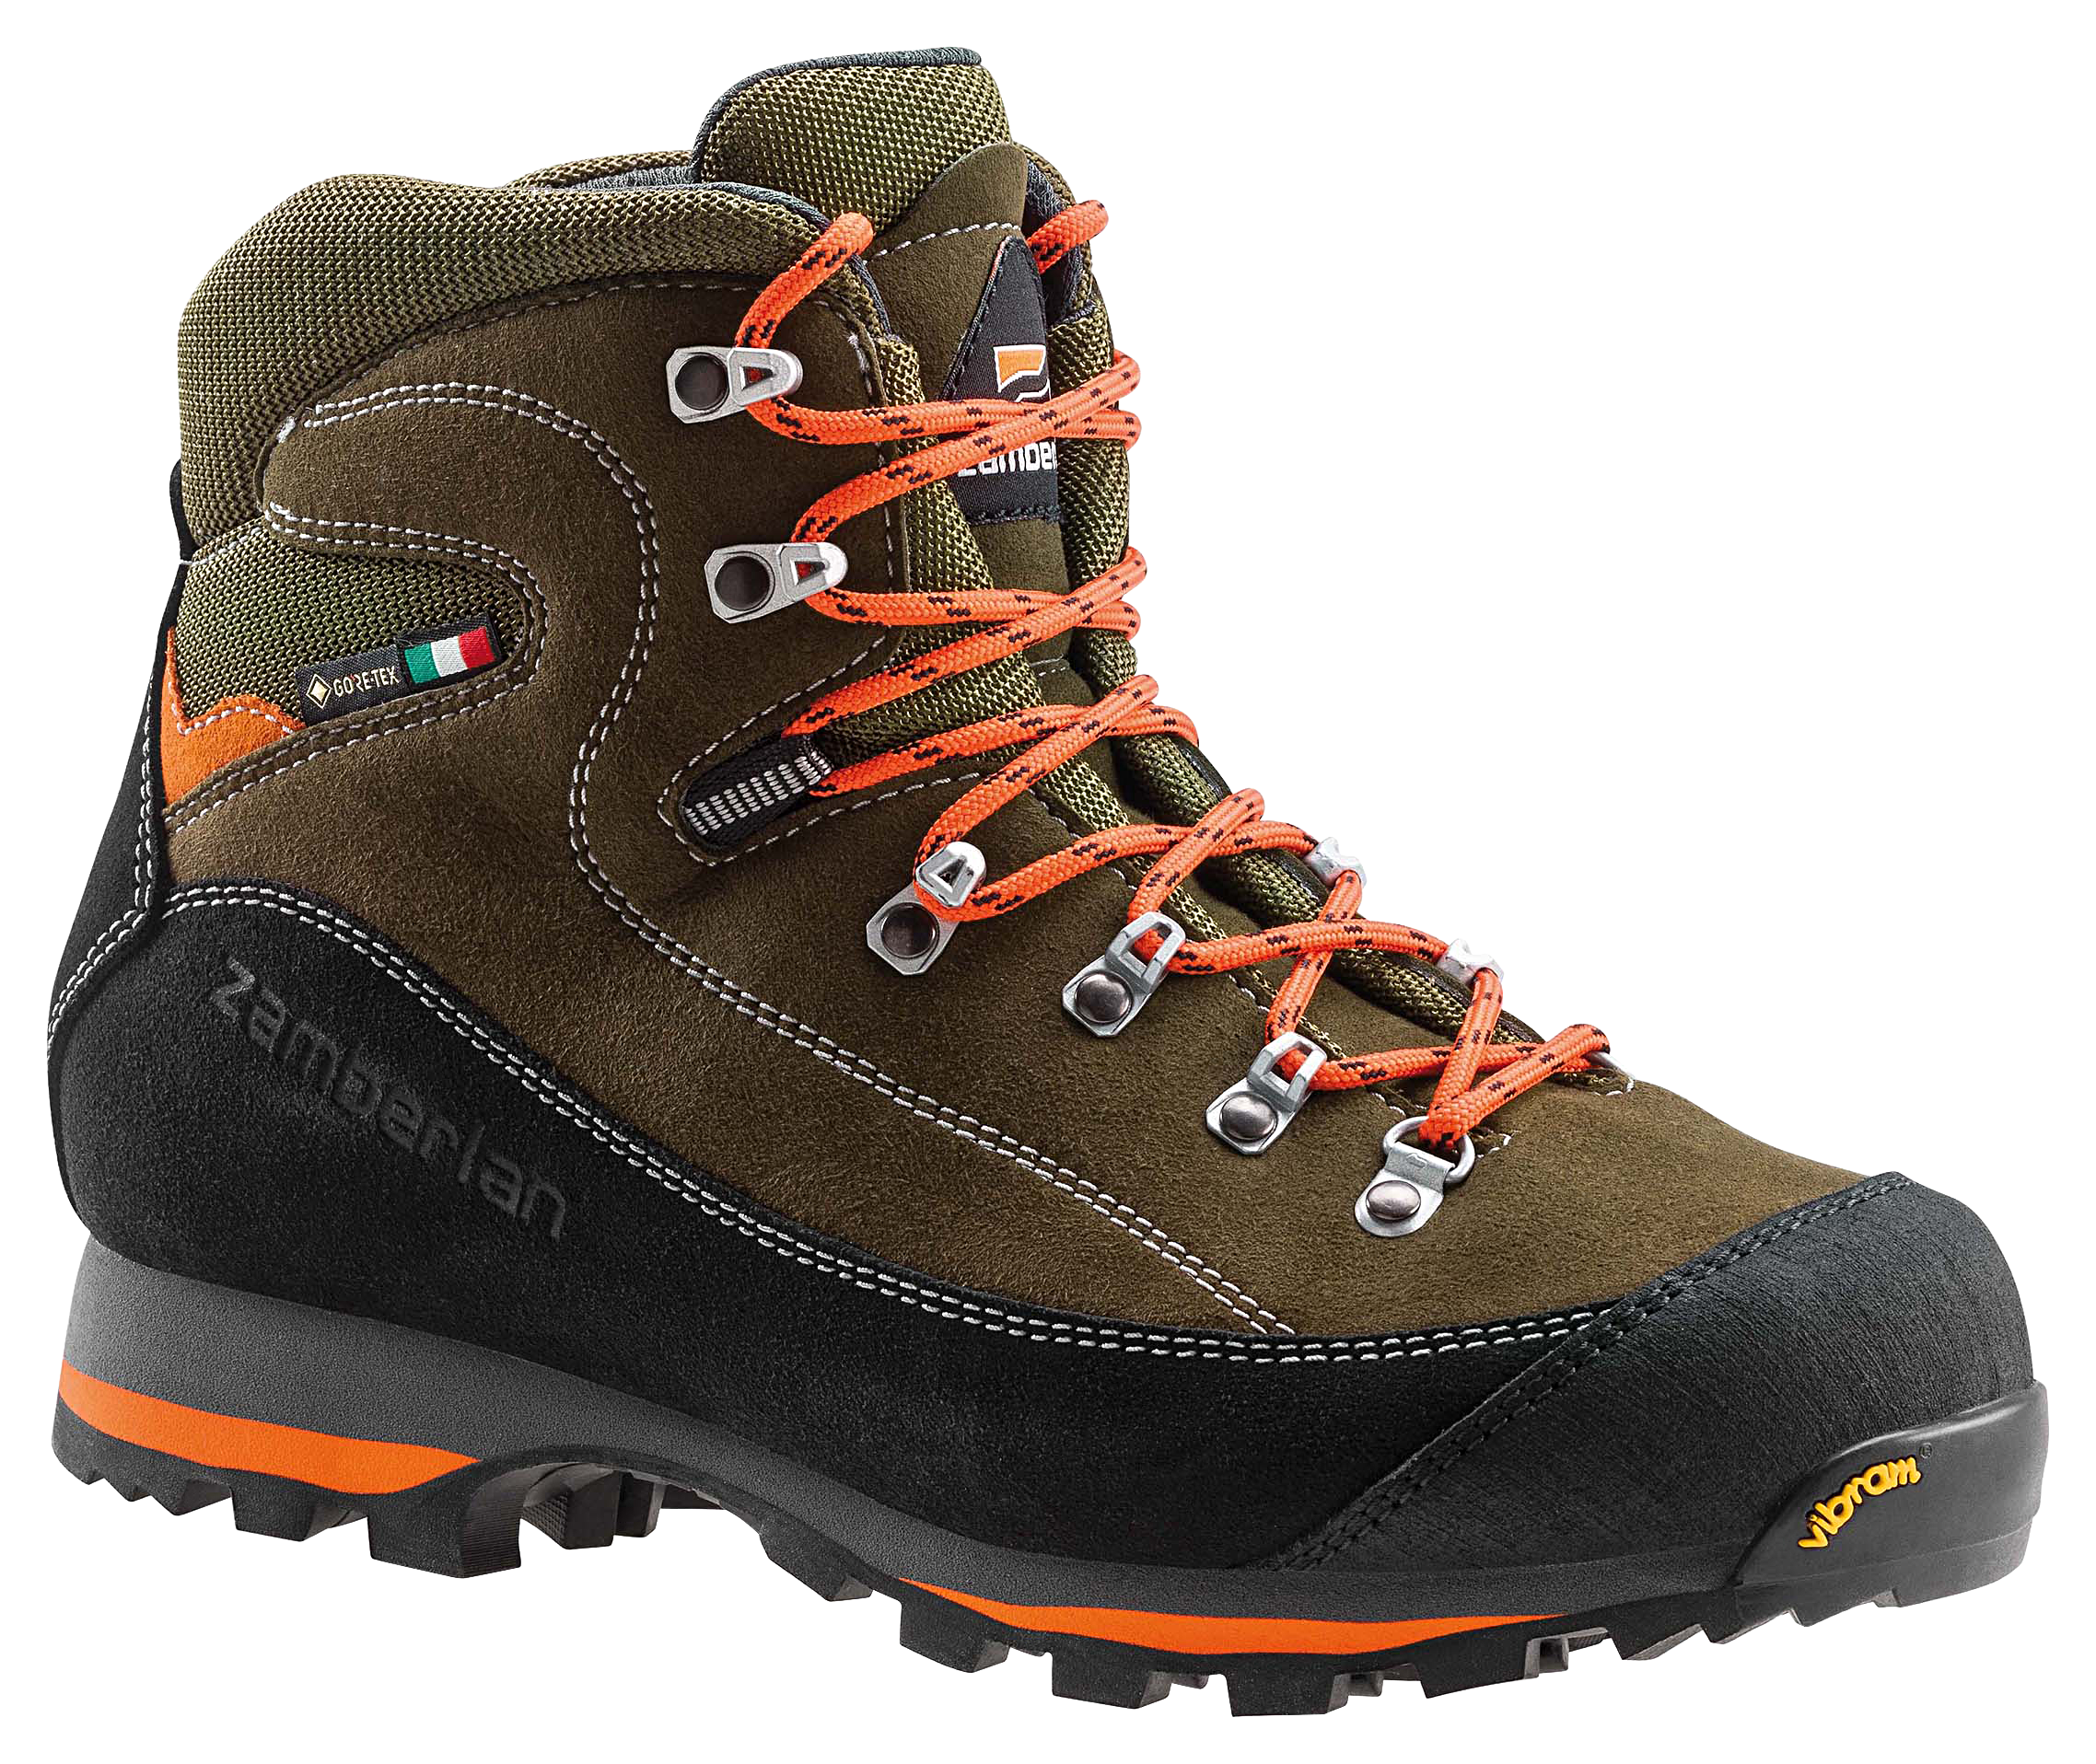 Zamberlan 700 Sierra GTX Waterproof Hunting Boots for Men - Forest - 11.5M